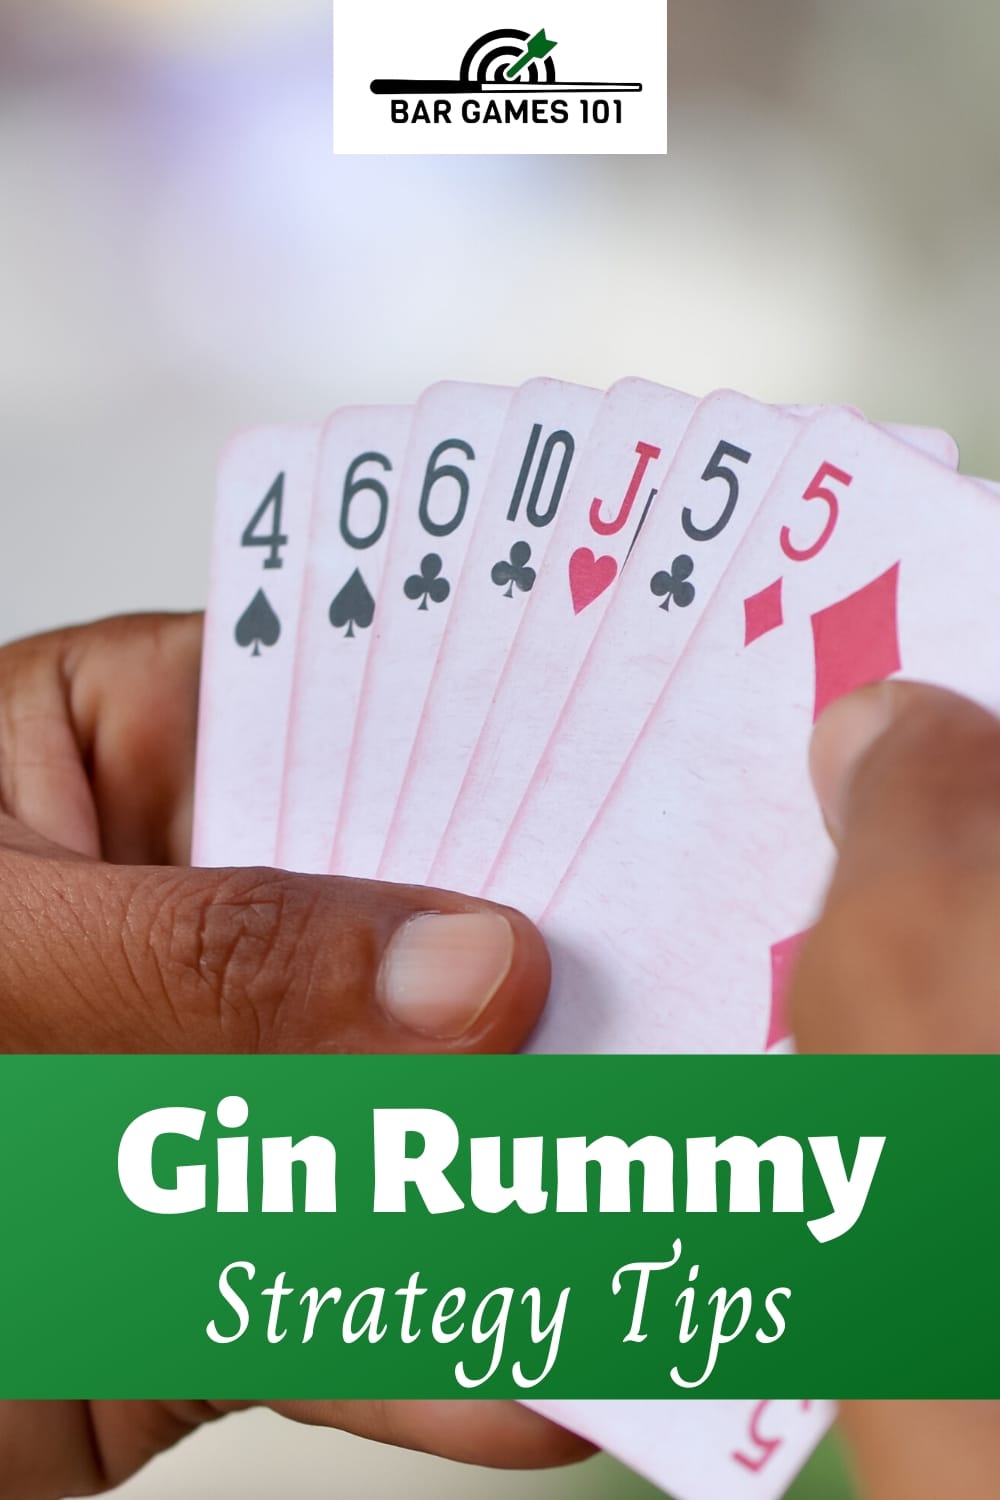 gin rummy ok rules